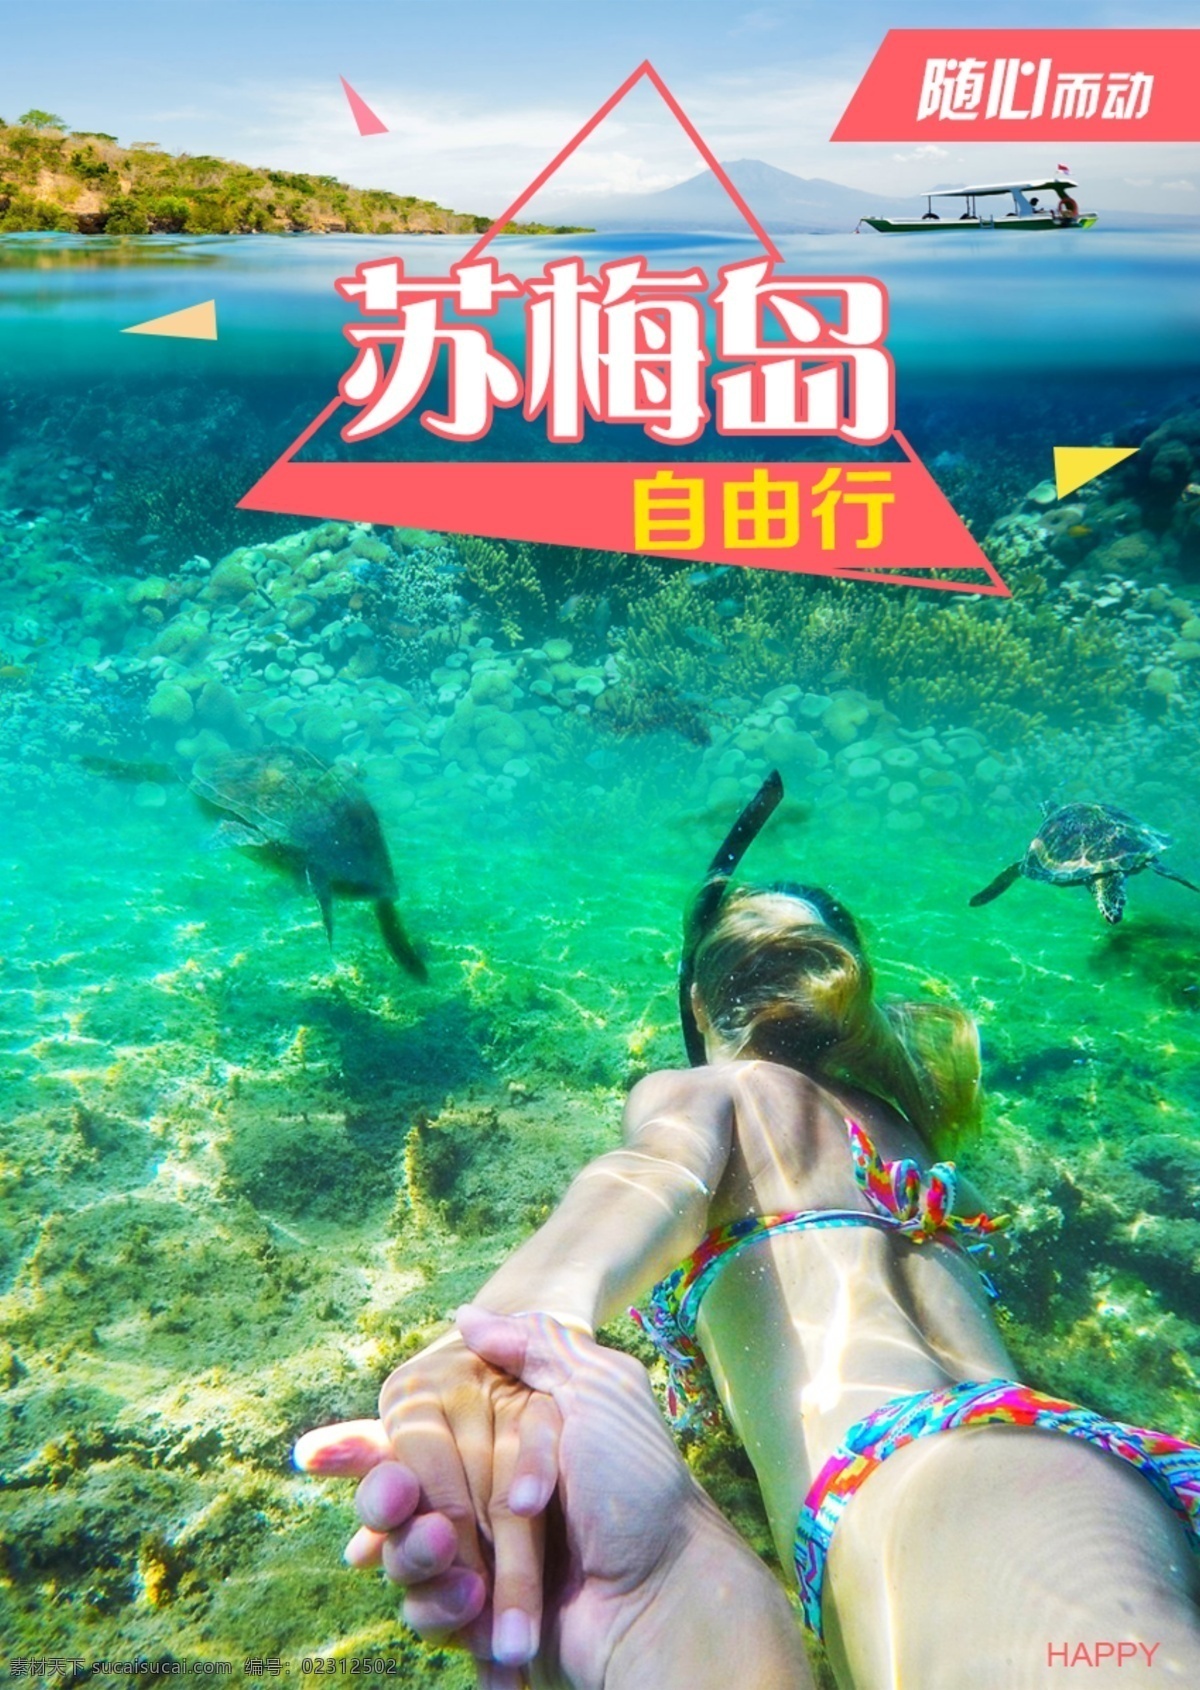 苏梅岛自由行 苏梅岛 自由行 广告 海报 旅游